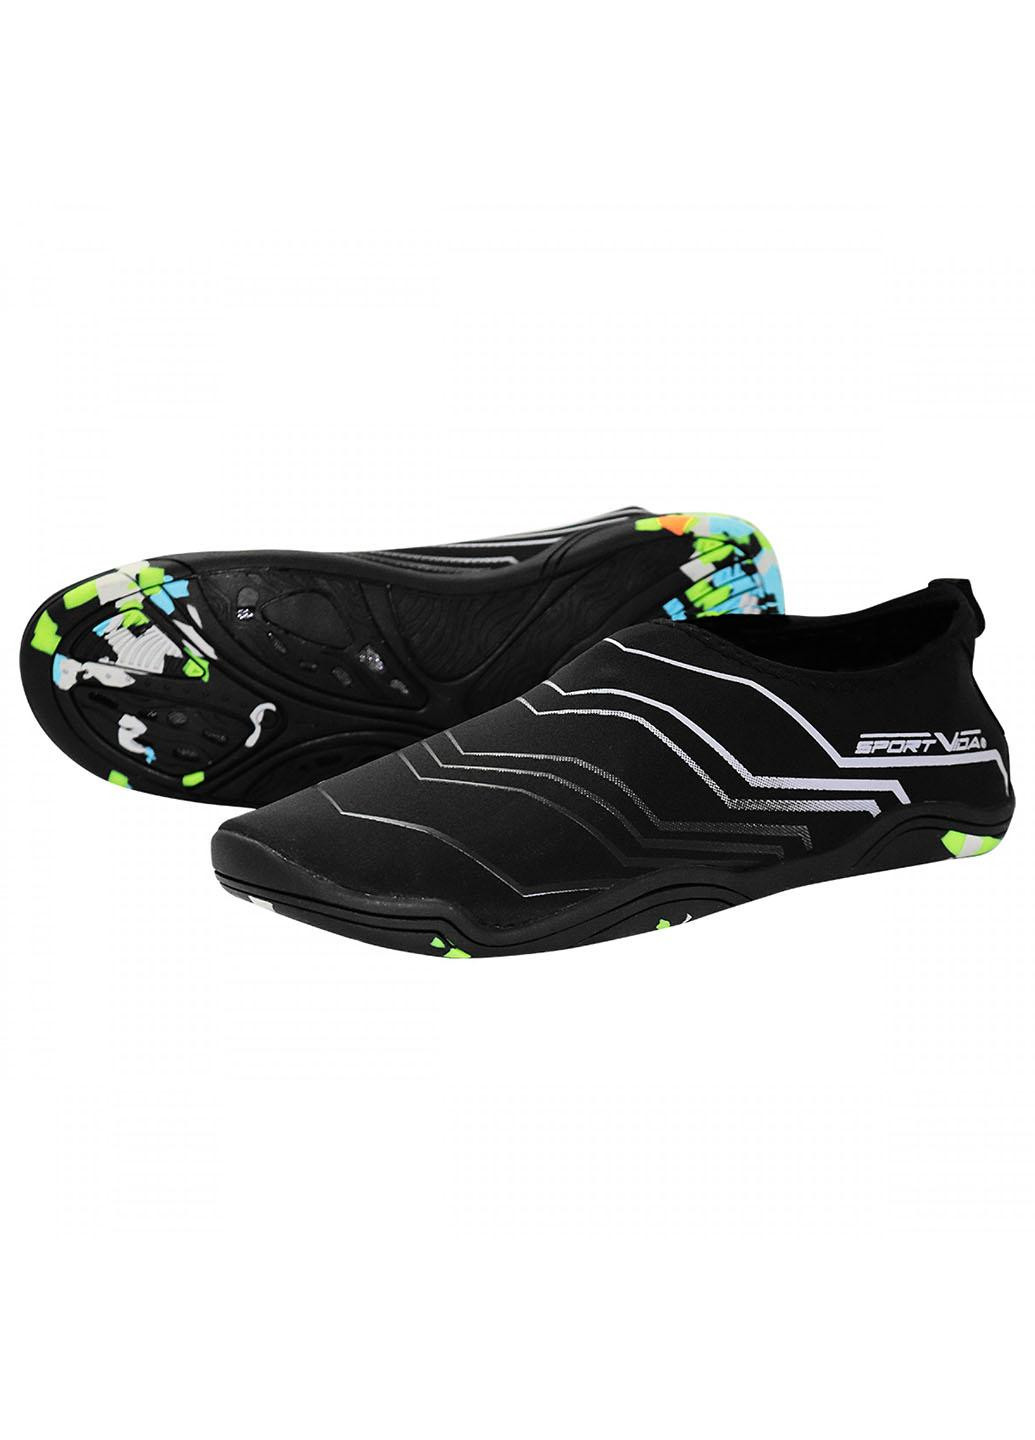 Обувь для пляжа и кораллов (аквашузы) SV-GY0006-R43 Size 43 Black/Grey SportVida (258486785)